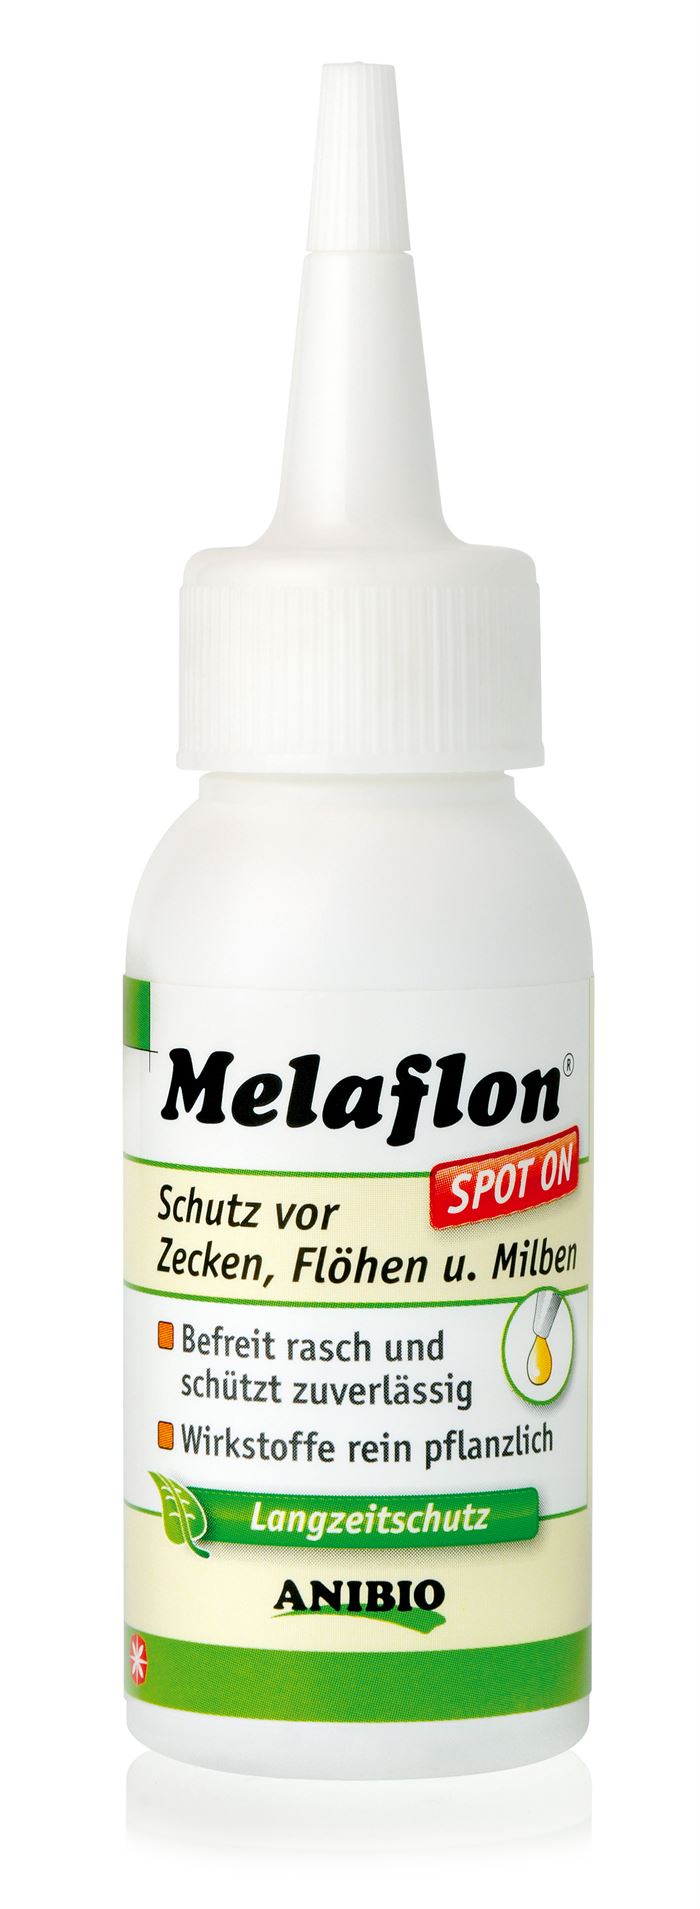 Melaflon Spot-On